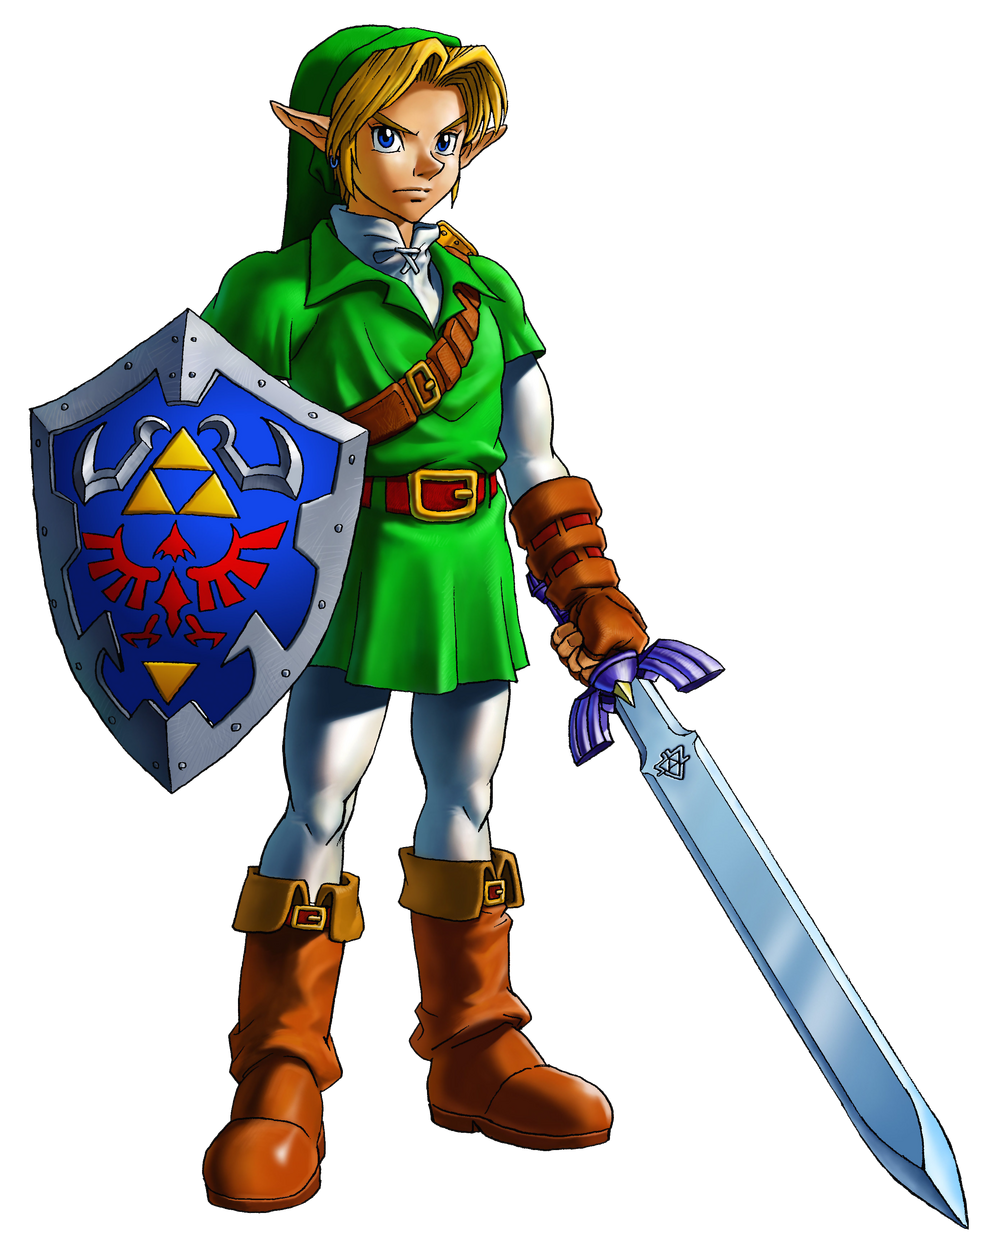 Link (personagem) – Wikipédia, a enciclopédia livre